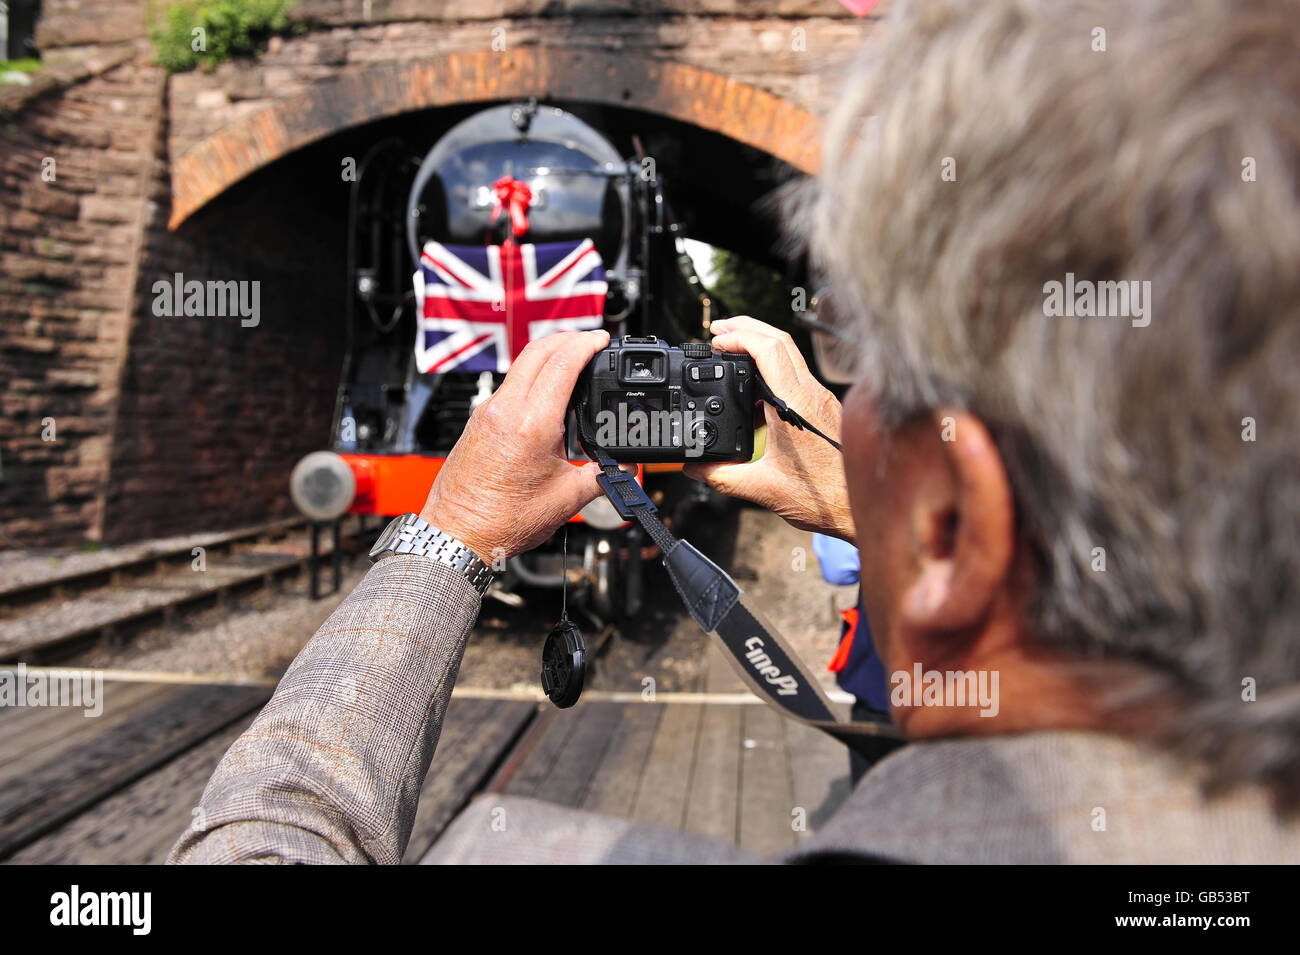 Un fervent de chemin de fer prend des photos du lancement de la dernière locomotive de la classe de l'Ouest du Southern Railway n° 34046, appelée Braunton à la gare de Lydeard près de Taunton, Somerset, après un projet de rénovation important. Banque D'Images